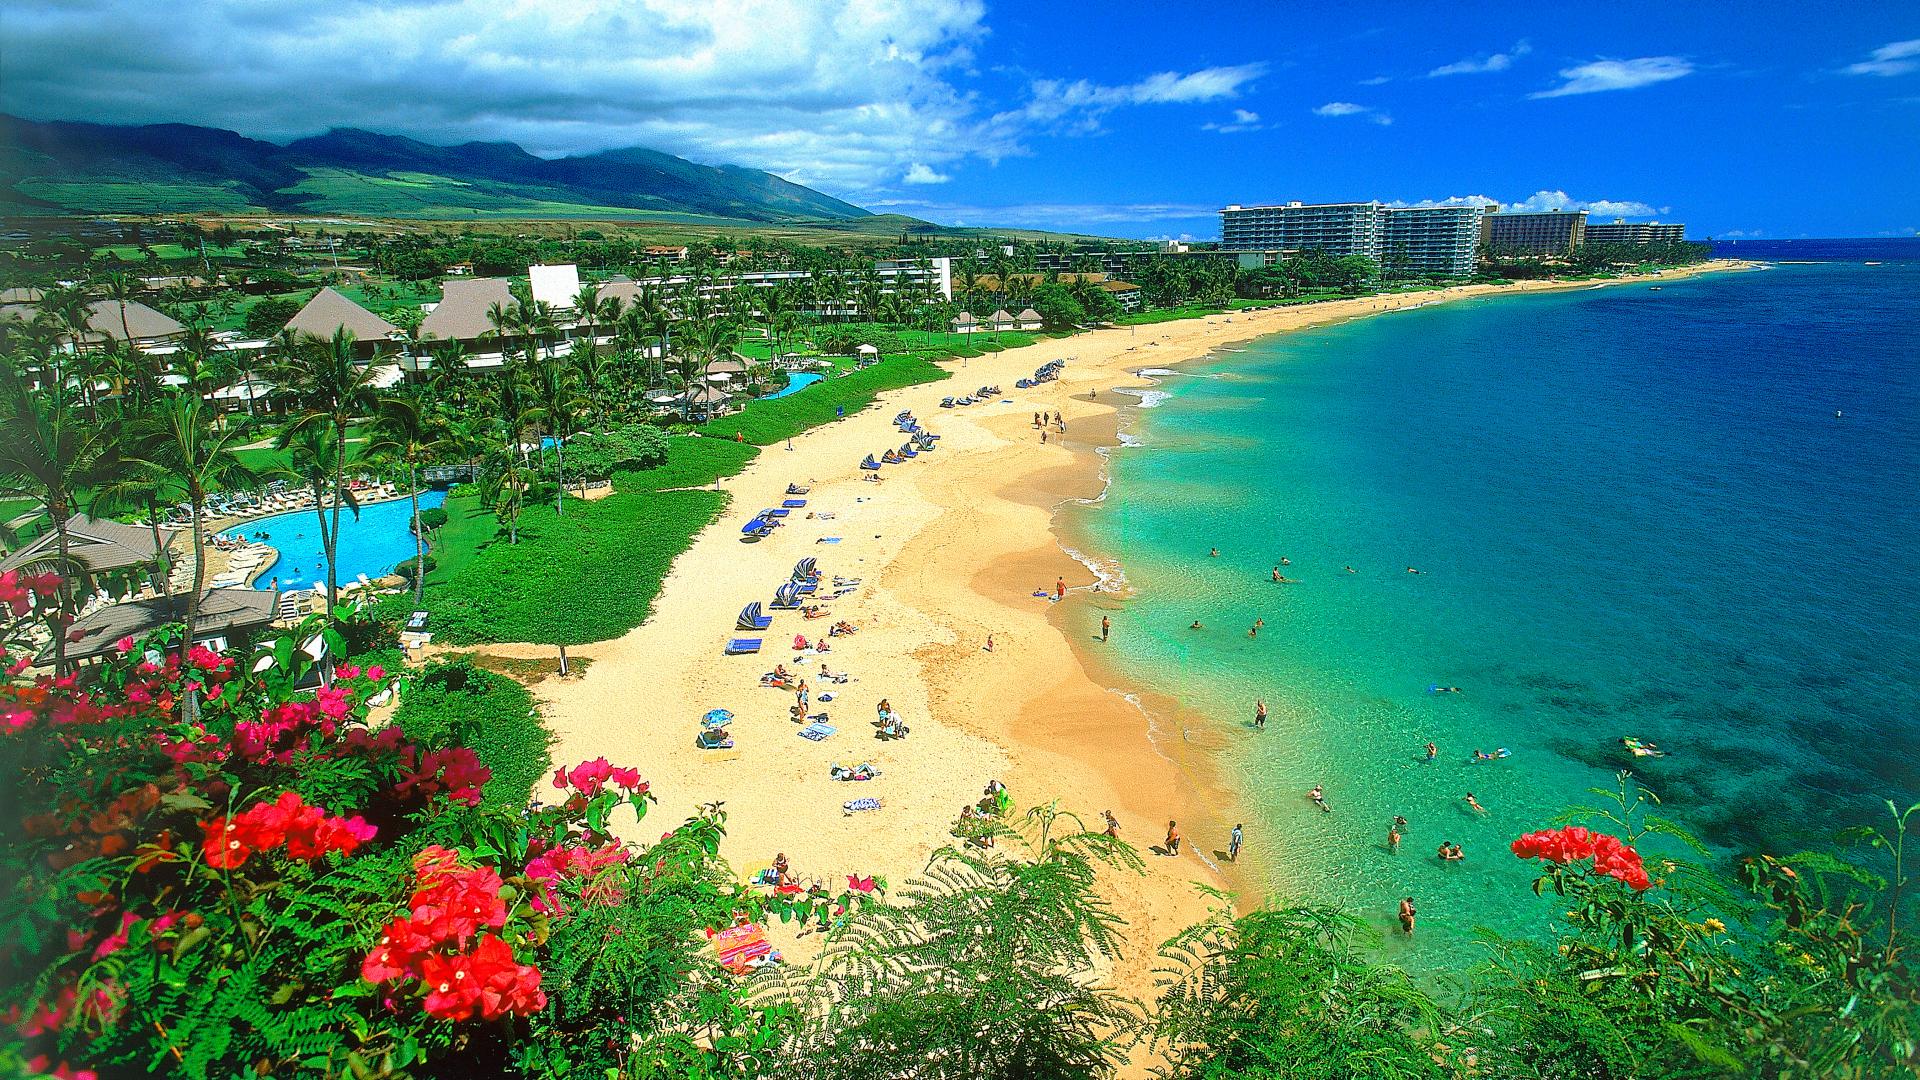 Hình nền động yên bình quyến rũ của Hawaii sẽ chinh phục trái tim bạn, mang lại cảm giác nhẹ nhàng, sảng khoái mỗi khi bộ máy tính được bật lên.